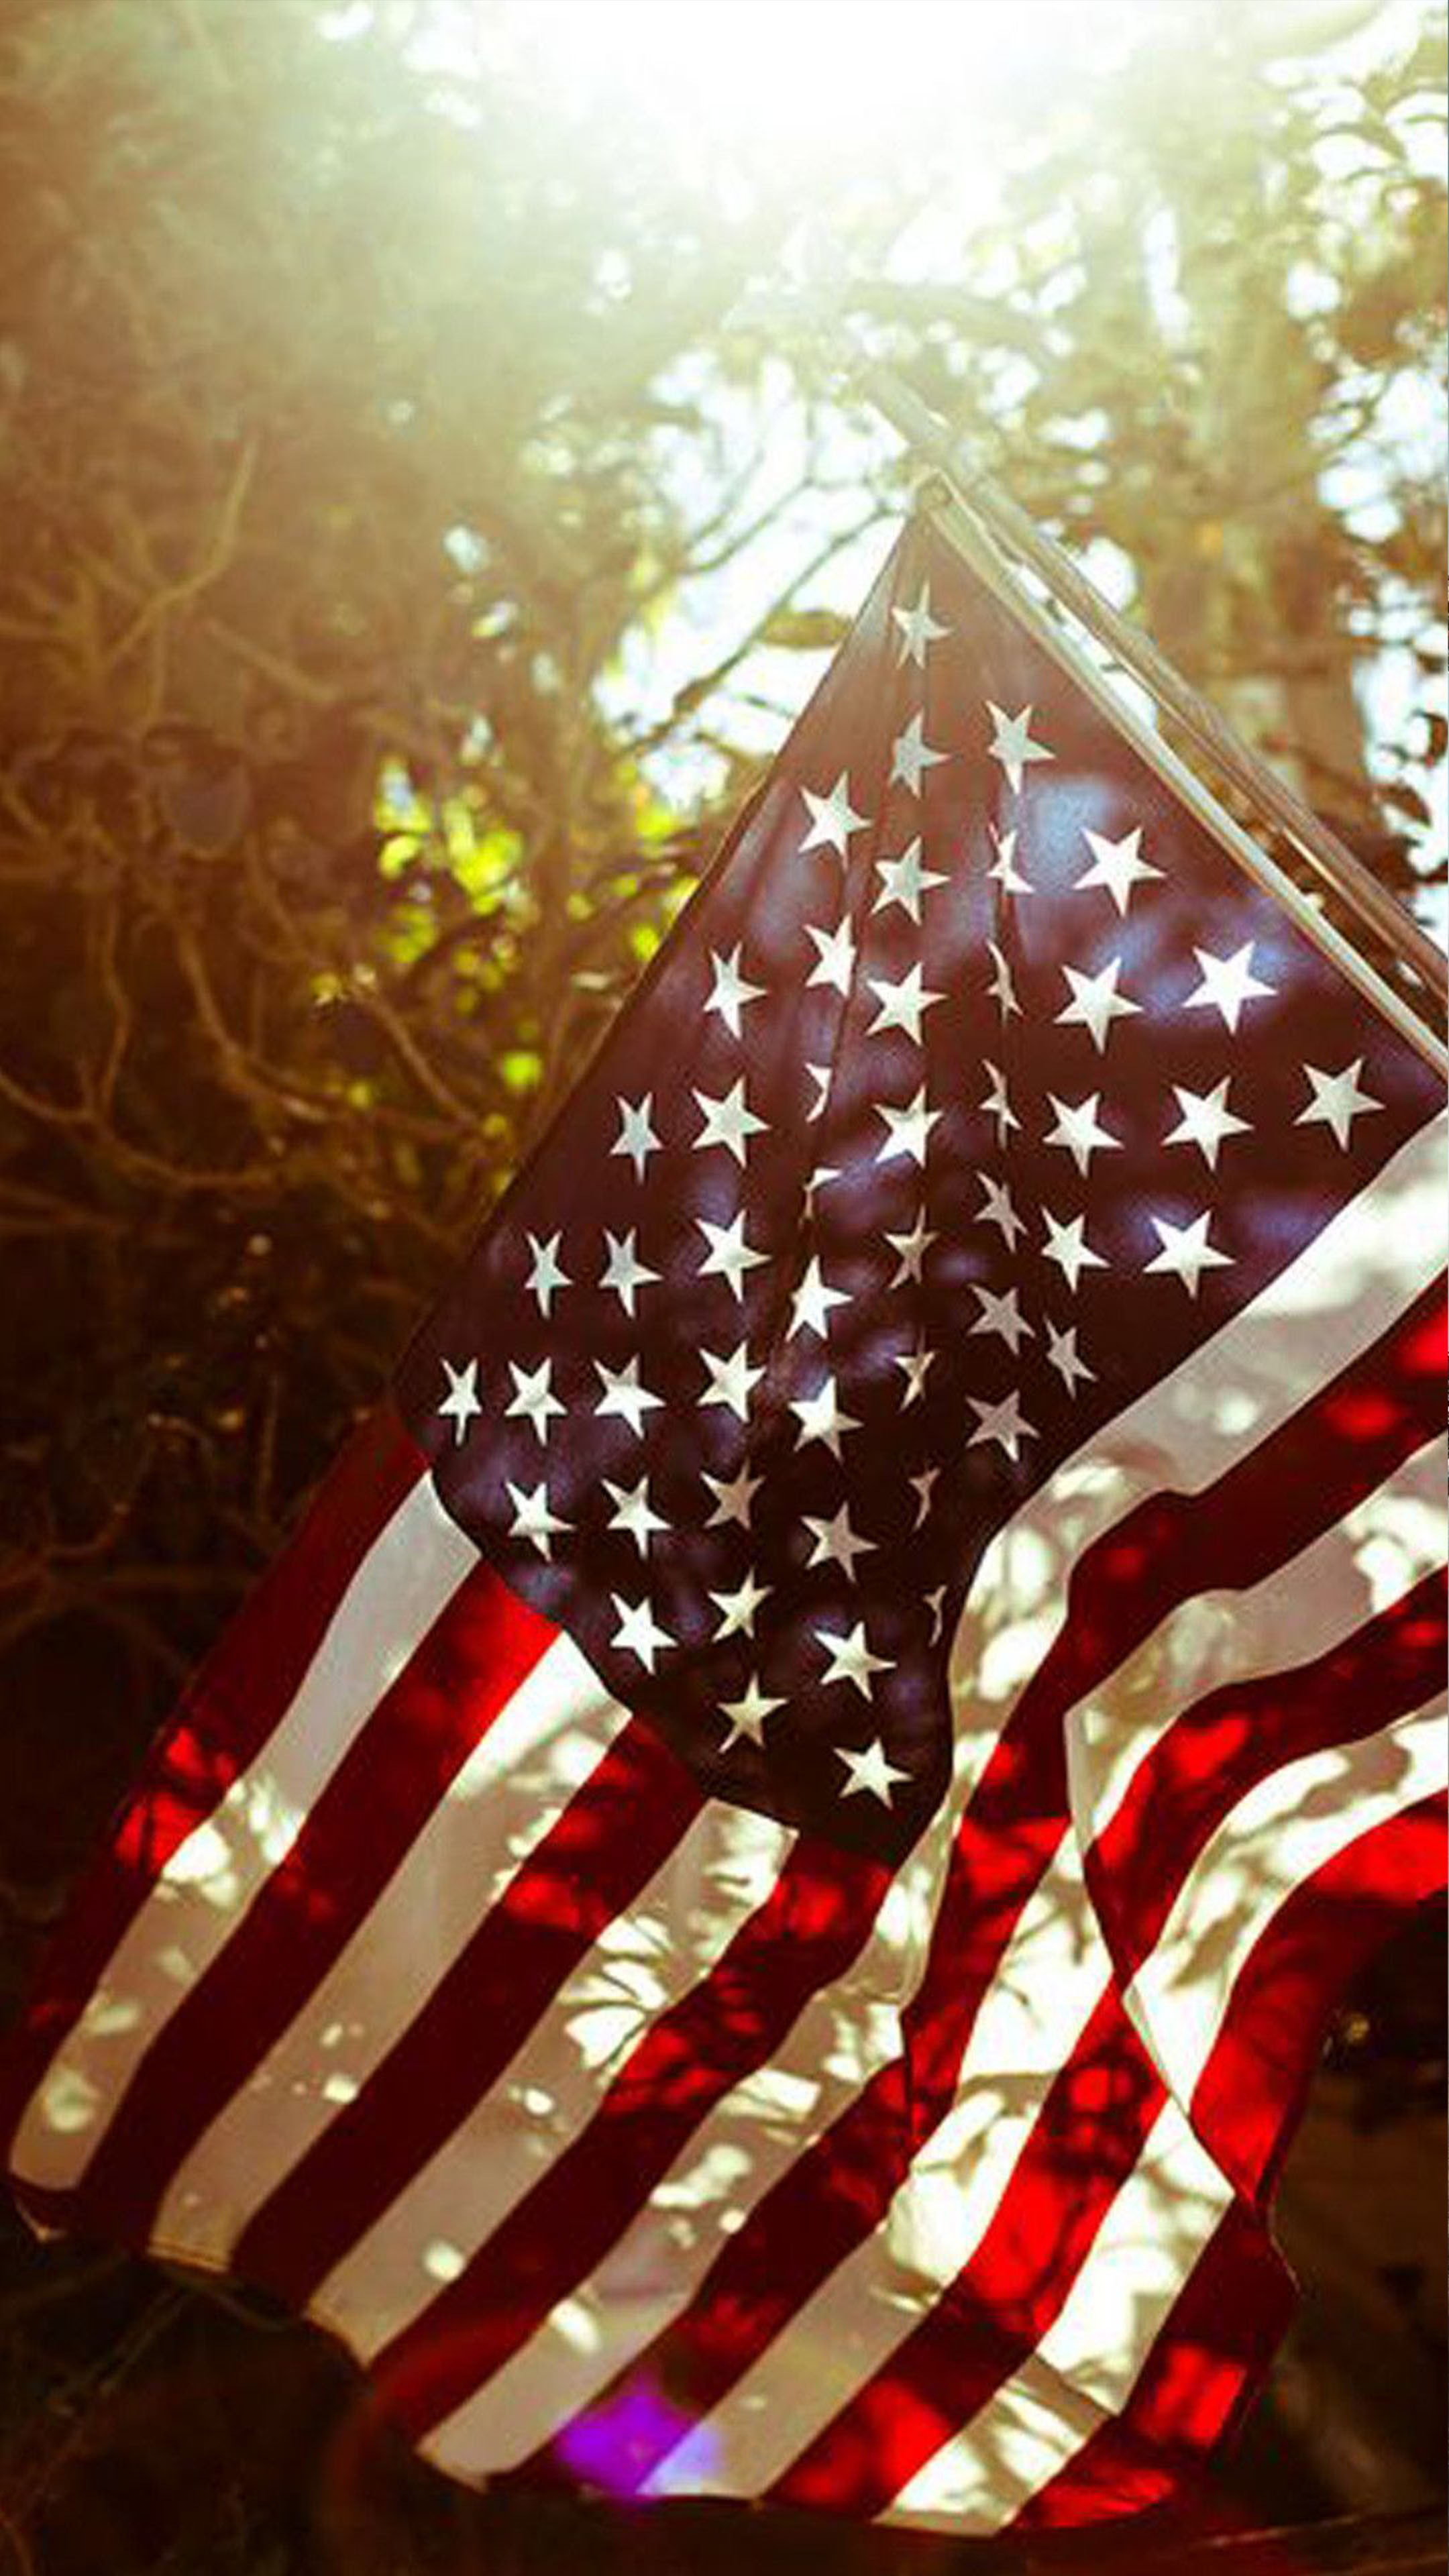 Cờ Mỹ - biểu tượng của đất nước tự do và những giá trị quan trọng của Hoa Kỳ. Xem hình ảnh này để khám phá vẻ đẹp của lá cờ và cảm nhận sức mạnh của quốc gia này.